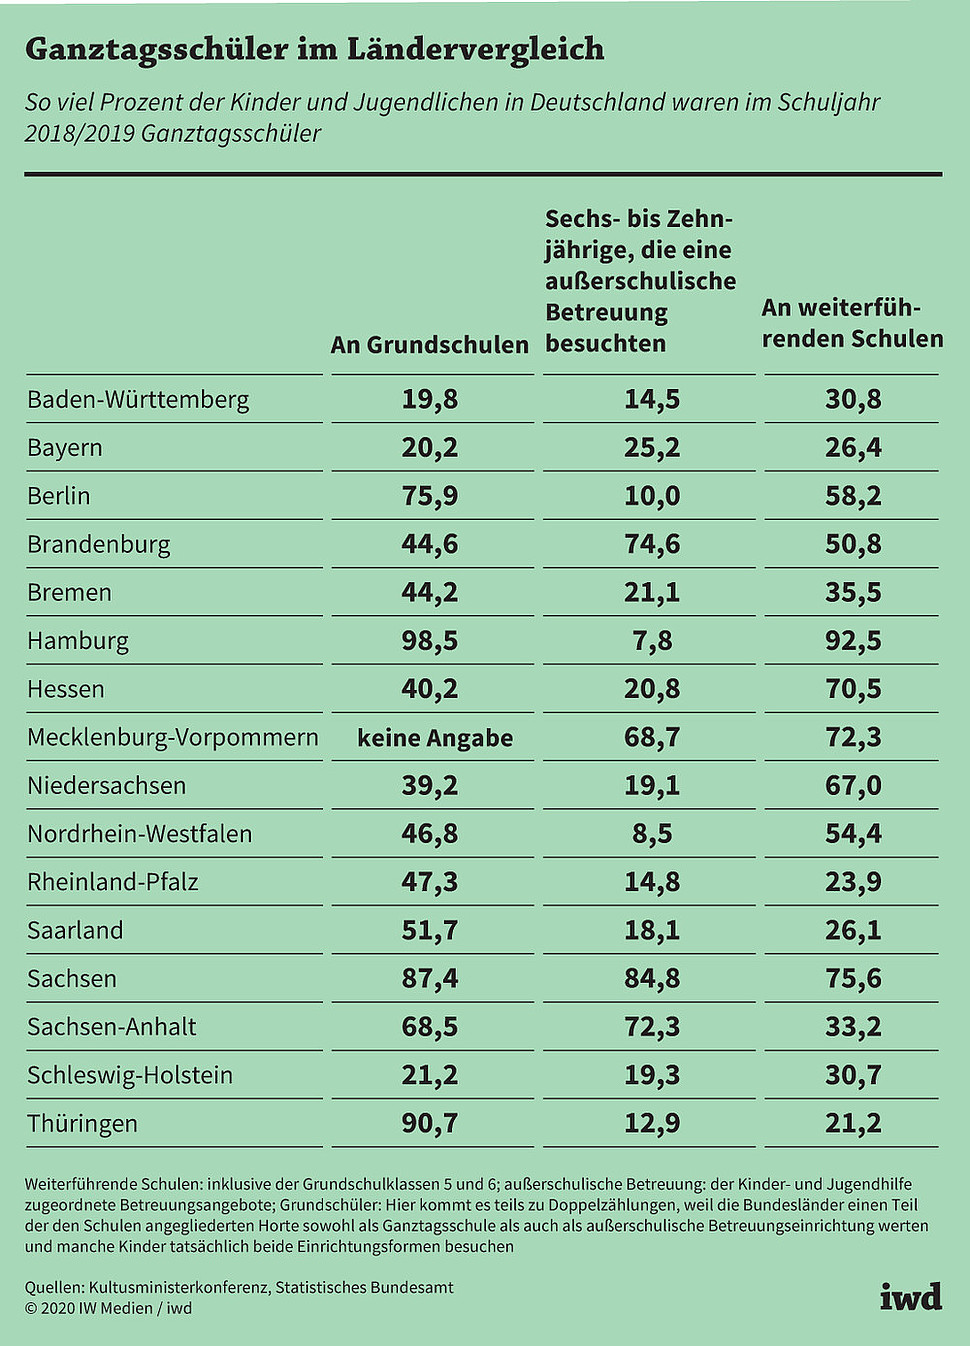 So viel Prozent der Kinder und Jugendlichen in Deutschland waren im Schuljahr 2018/2019 Ganztagsschüler